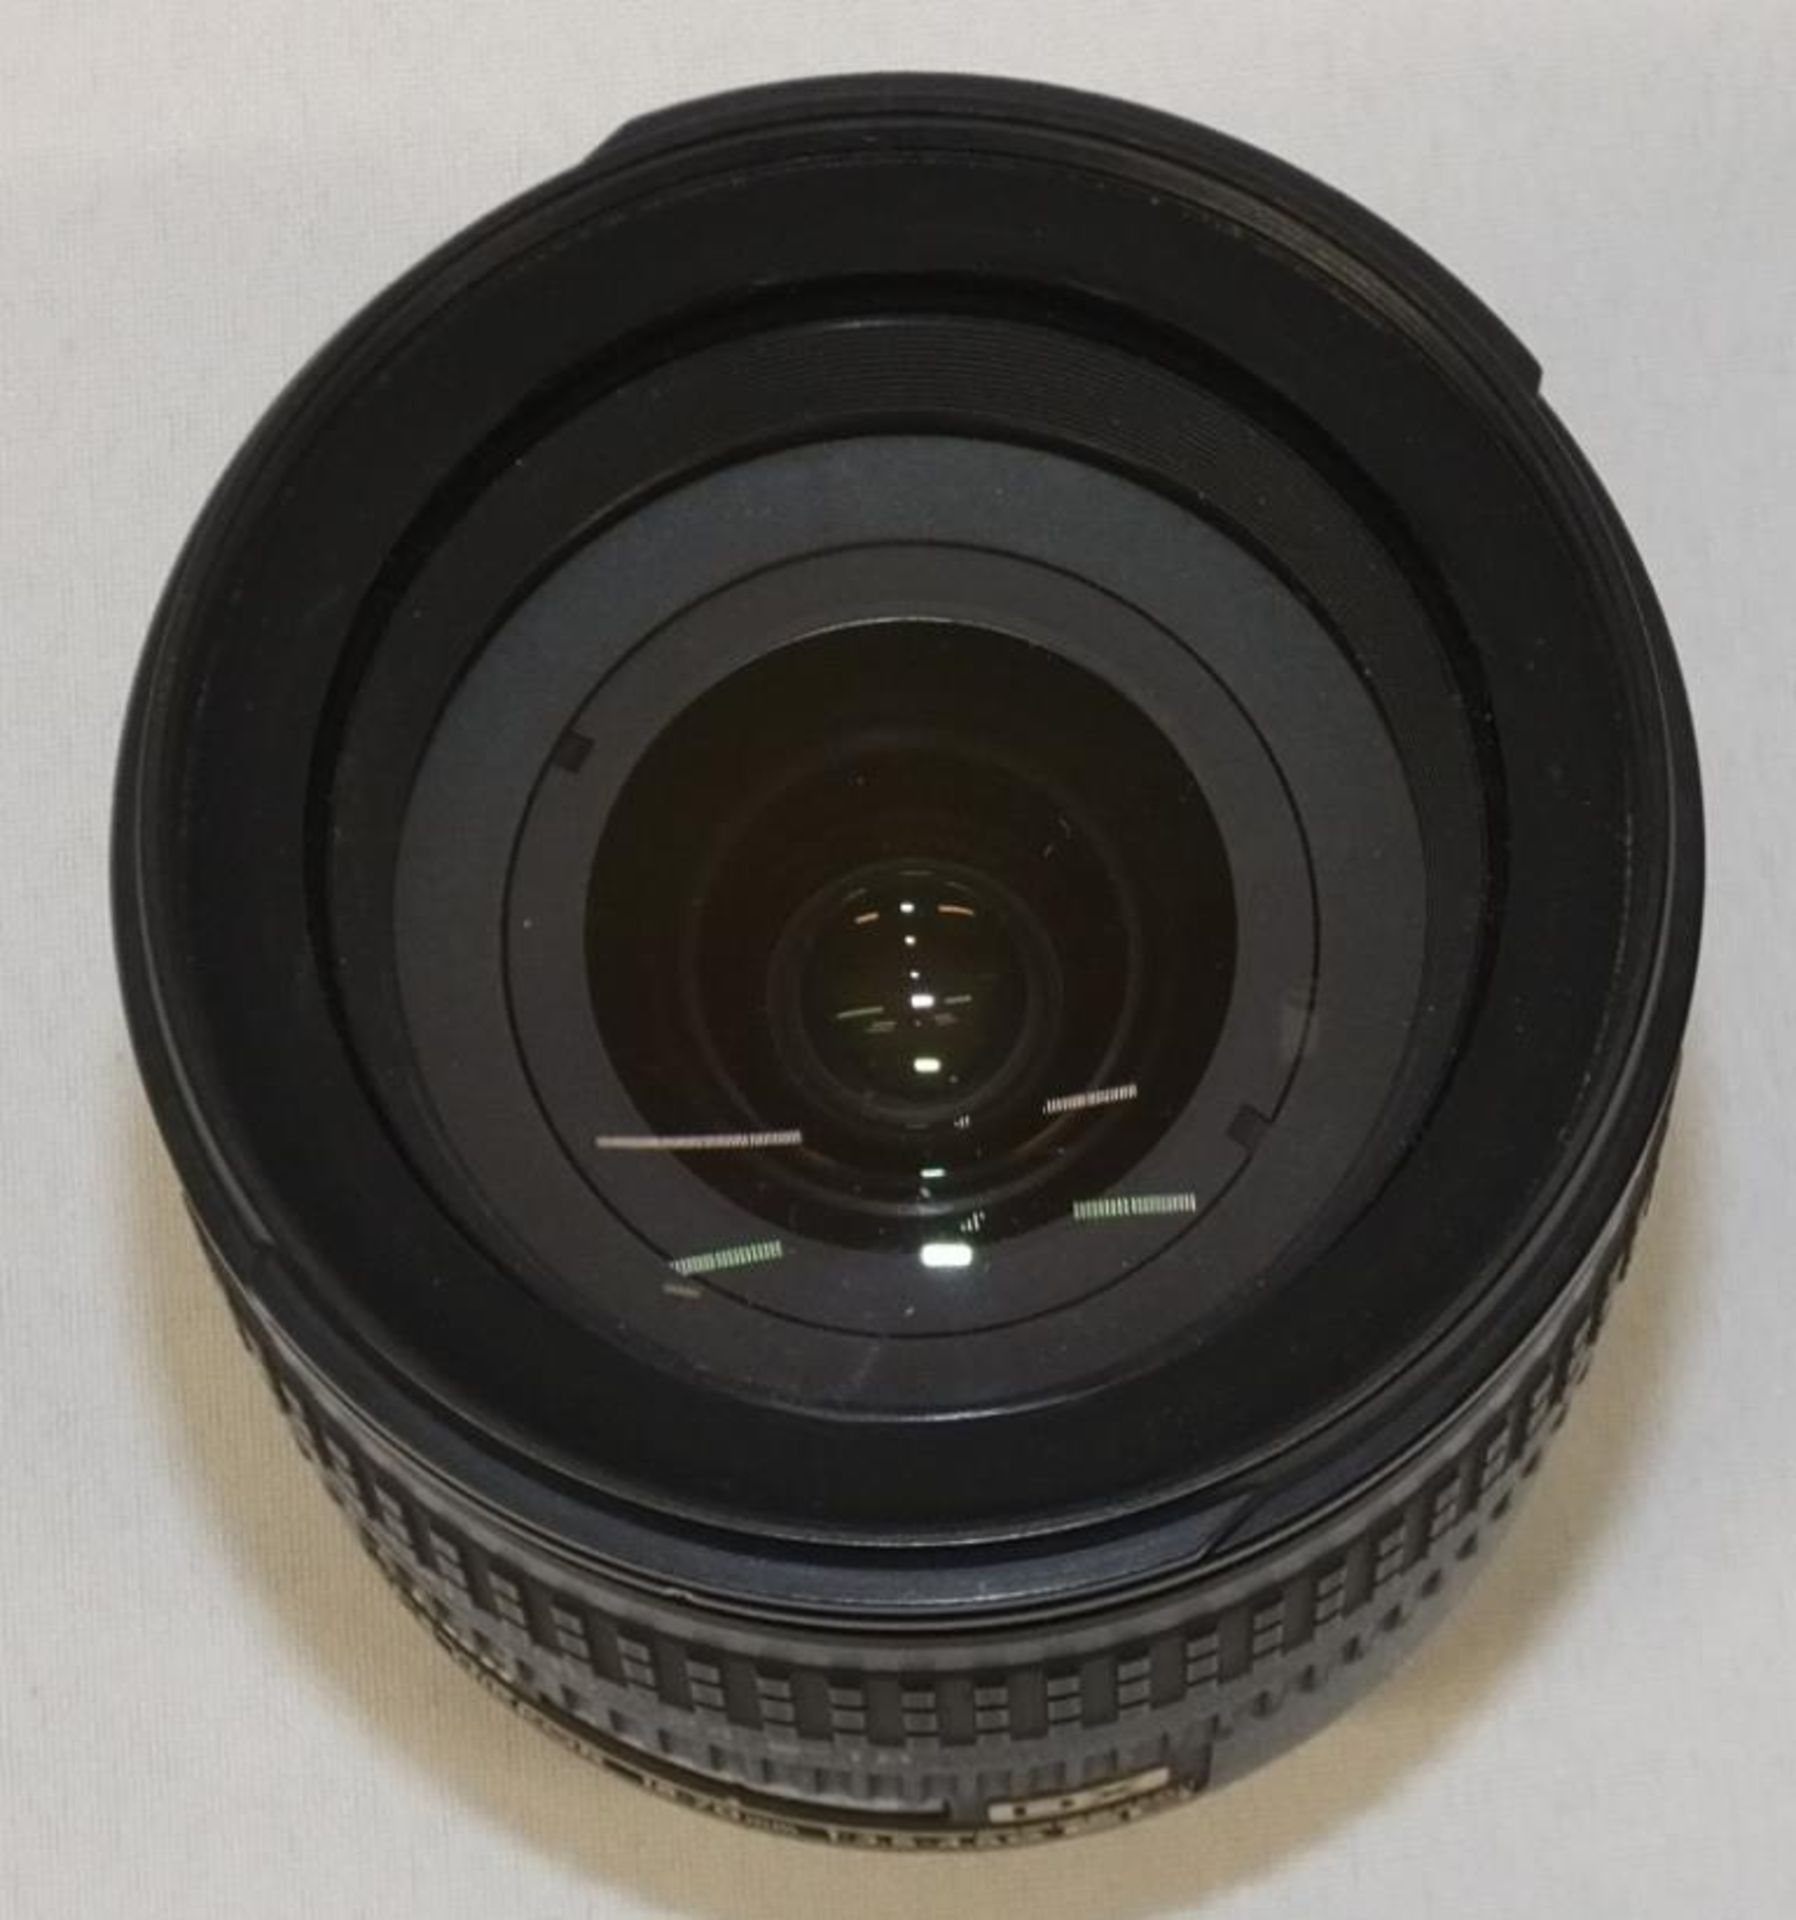 Nikon DX AF-S Nikkor 18-70mm - 1:3.5-4.5G ED Lens - Serial No. 2573301 - Image 3 of 3